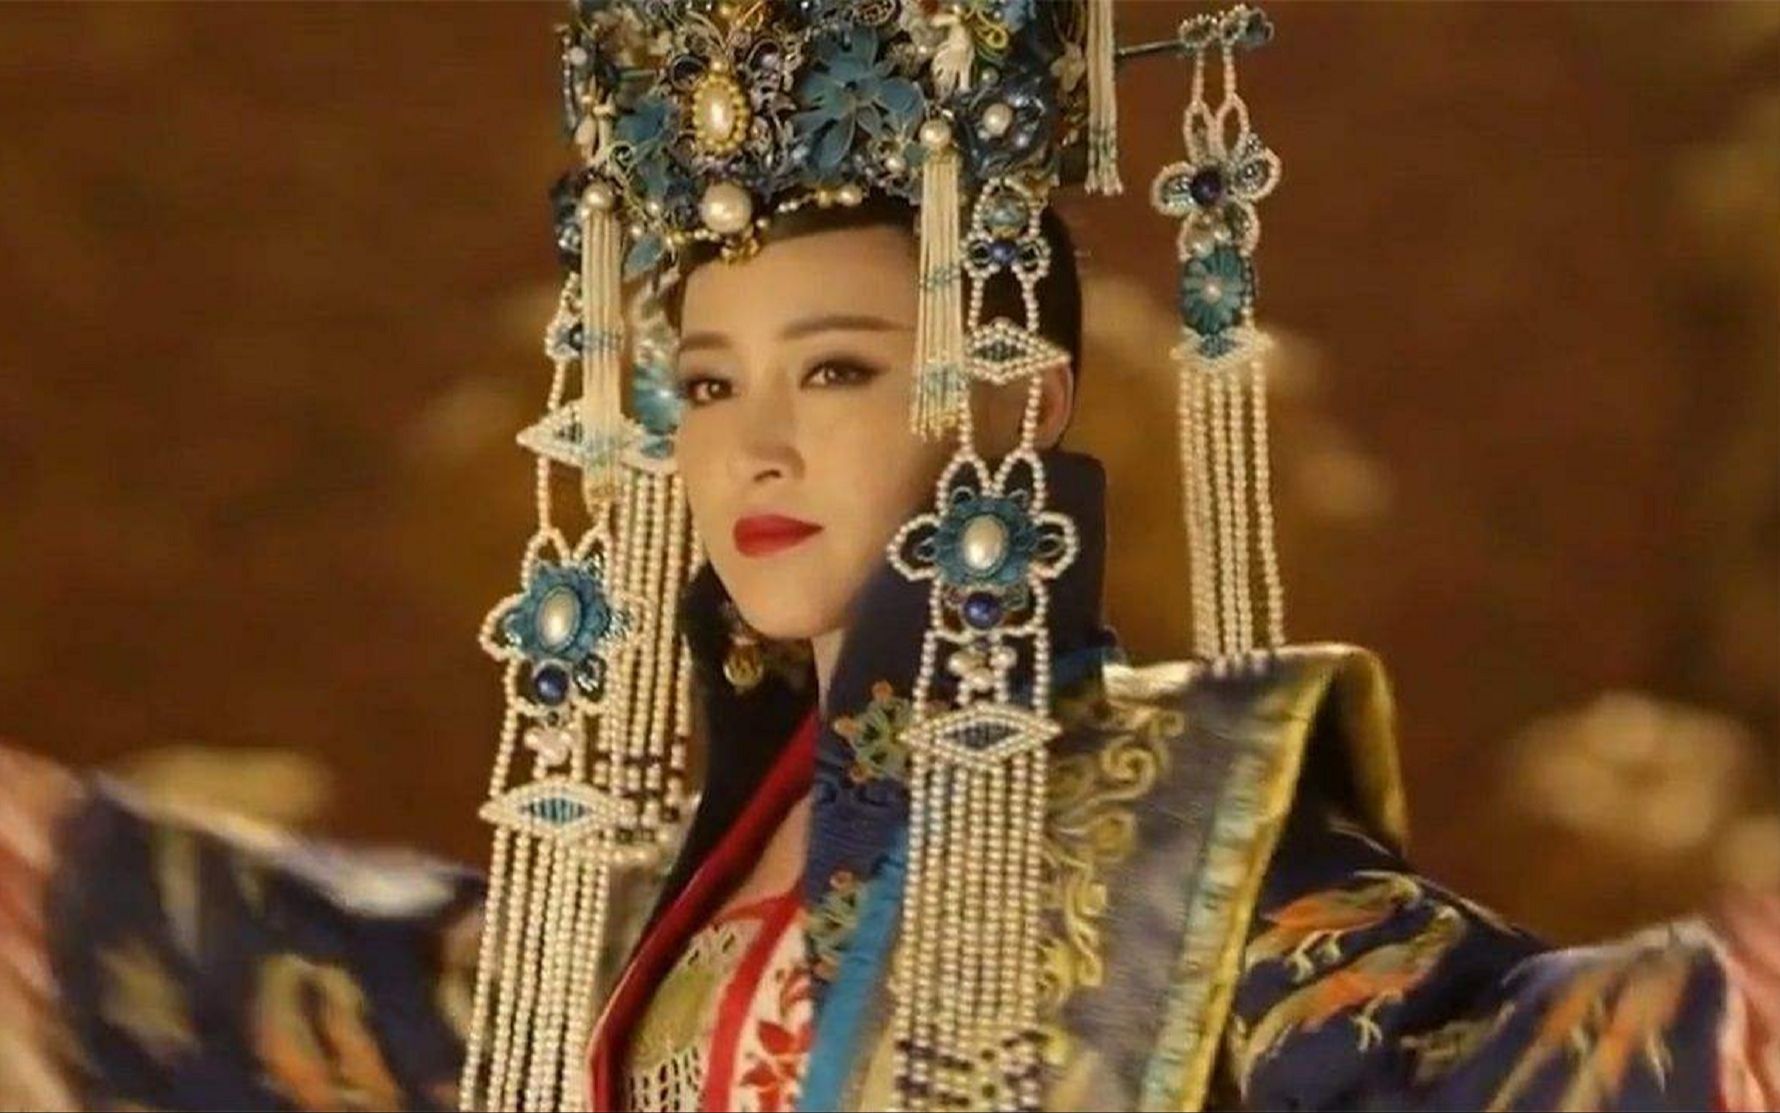 武则天死后的300多年,中国差点又出个女皇帝,死前想穿龙袍入葬